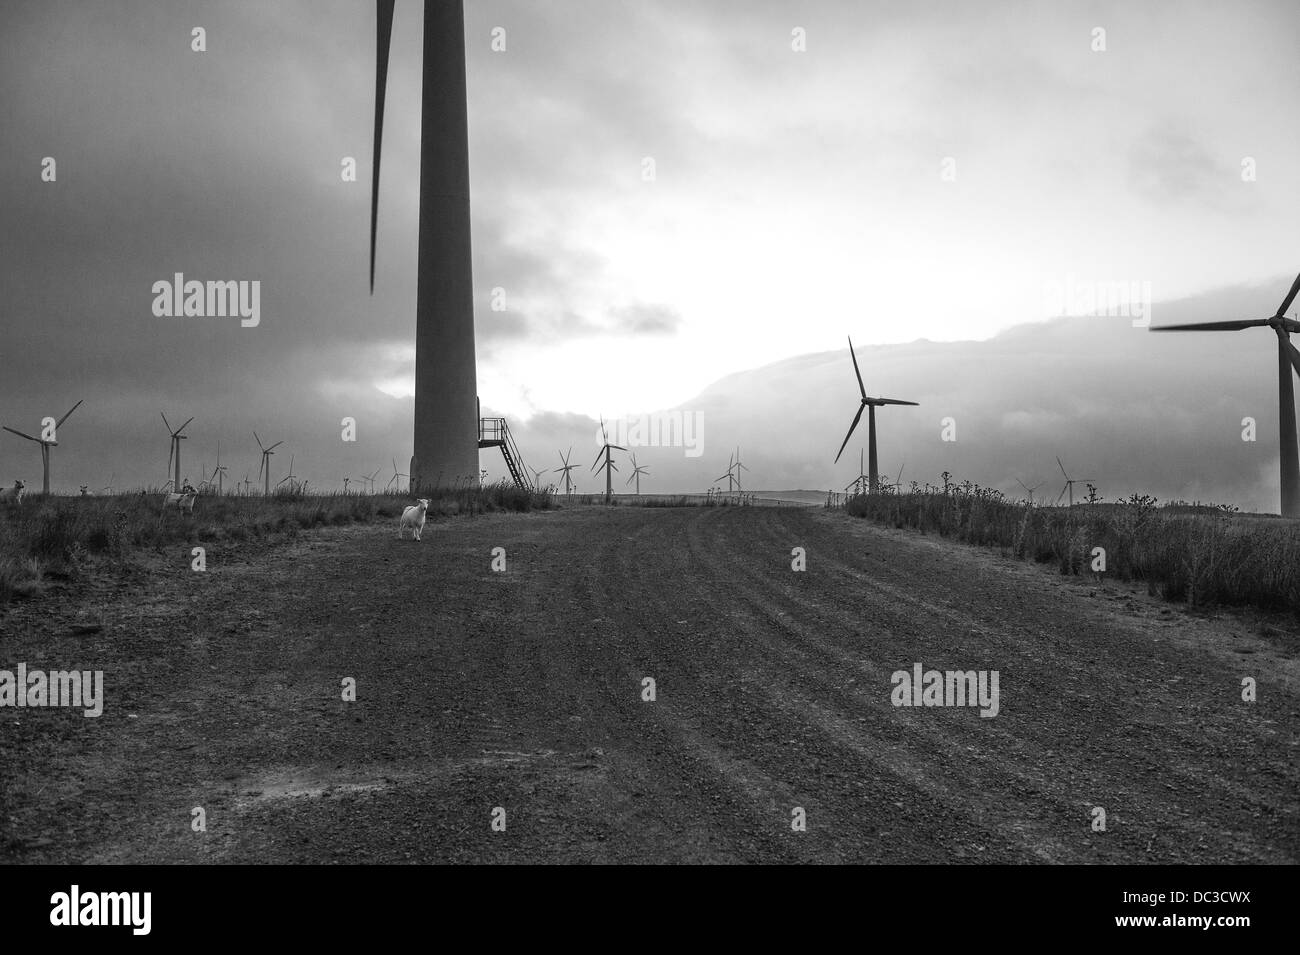 Windenergieanlagen Silhouette gegen einen dunklen am frühen Abend Himmel. Schwarz & Weiß. Stockfoto